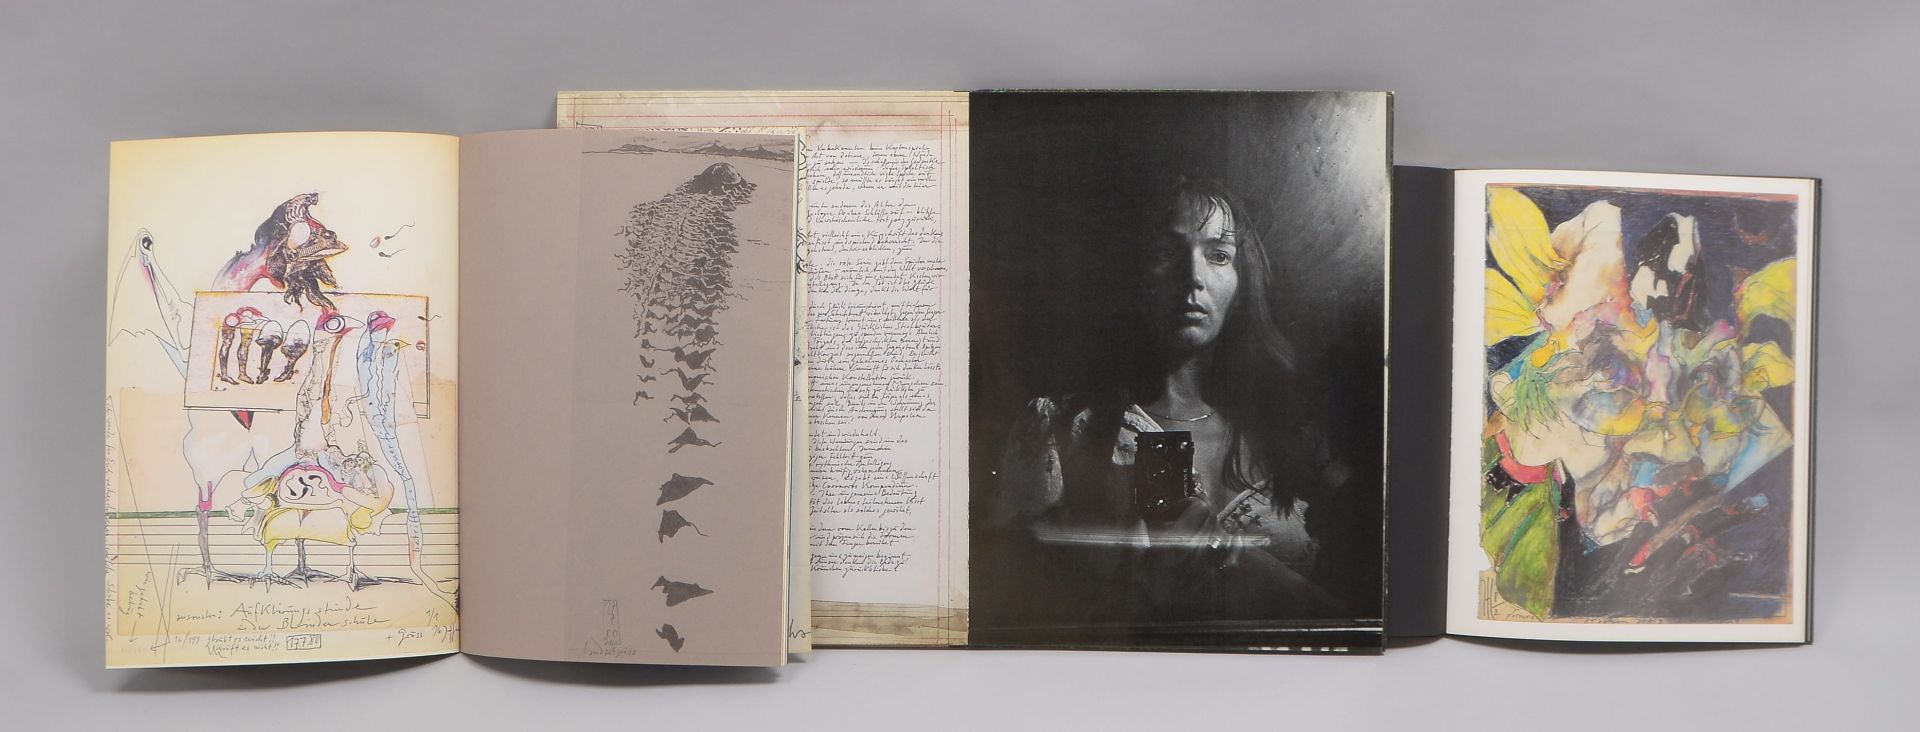 3 Bildbände, Janssen, Horst: 'Nocturno' (1977); 'Paranoia' (1982), und 'Angeber Icks' (1982) - Bild 3 aus 3